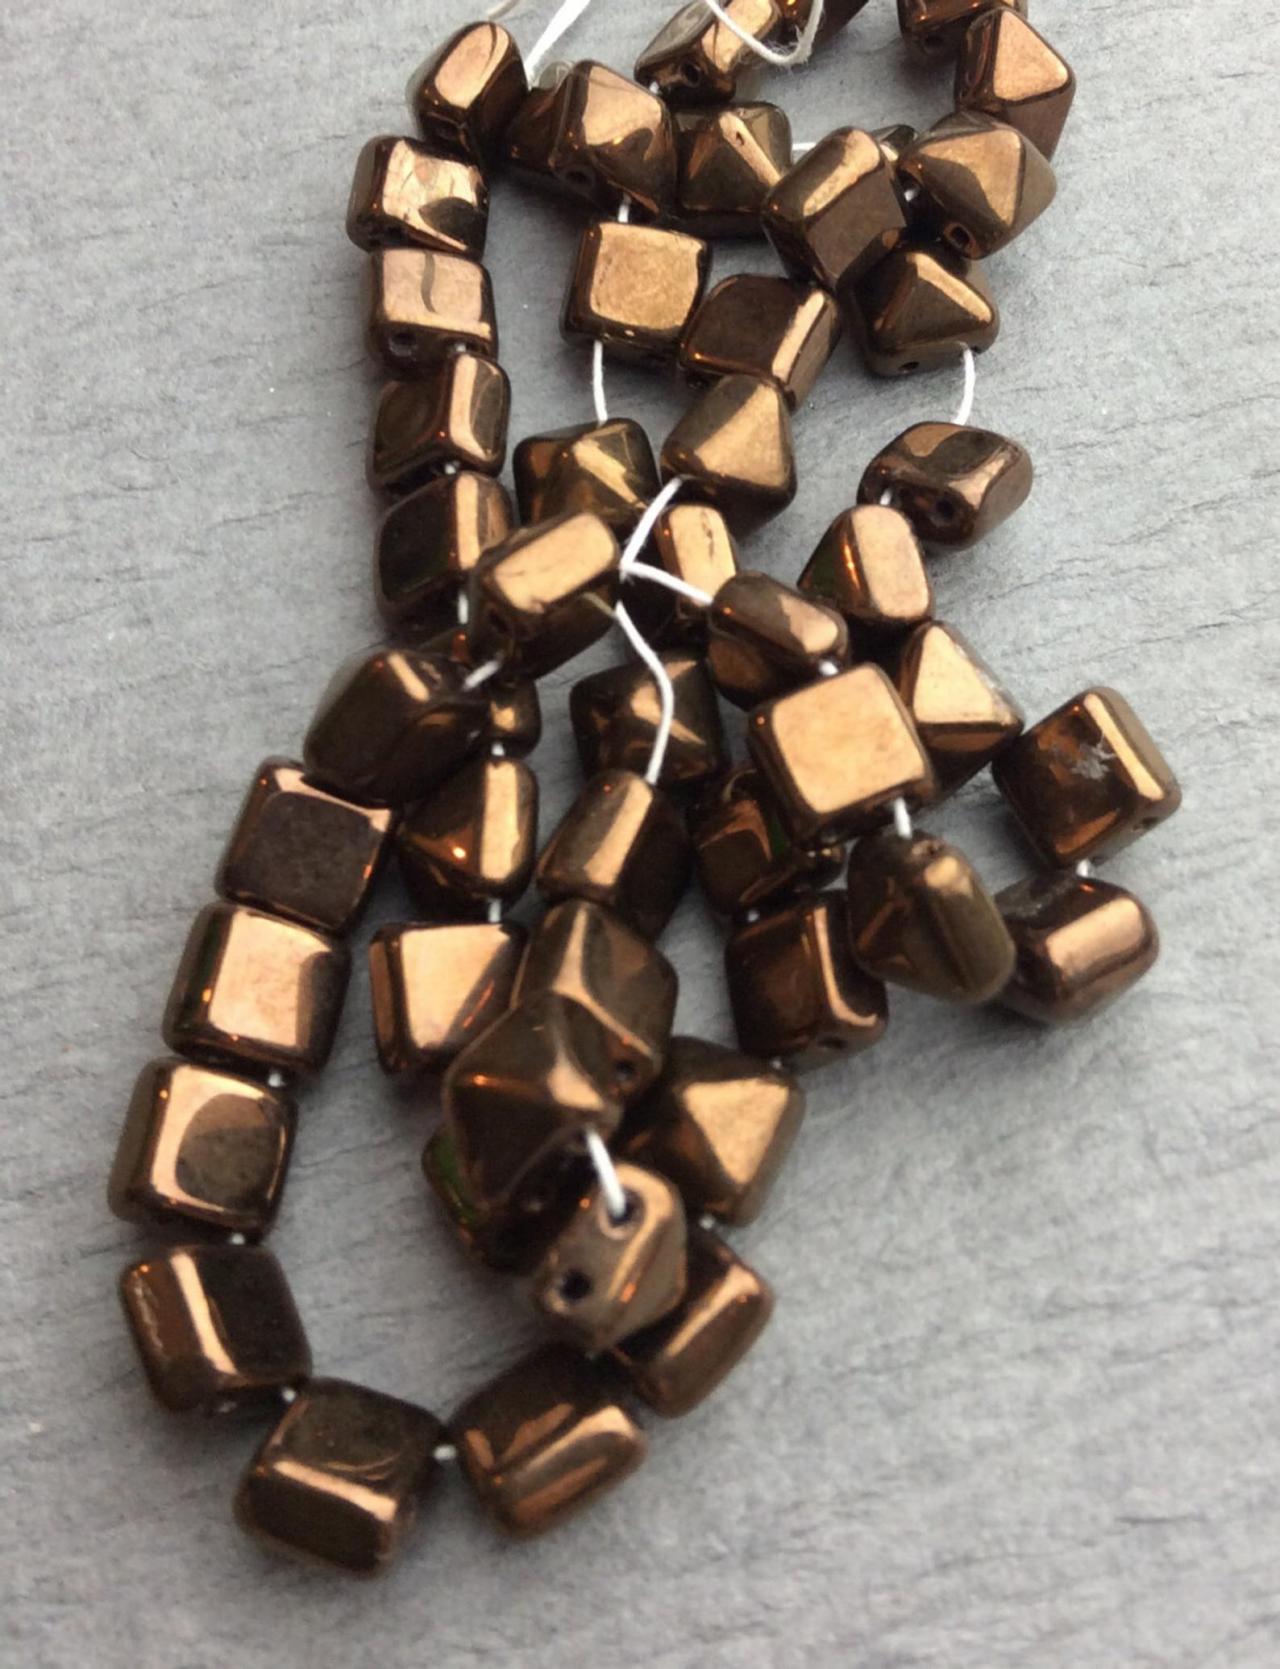 Strand Of 25 Mini 7x7mm 2-holed Pyramid Beads In Dark Bronze Metallic